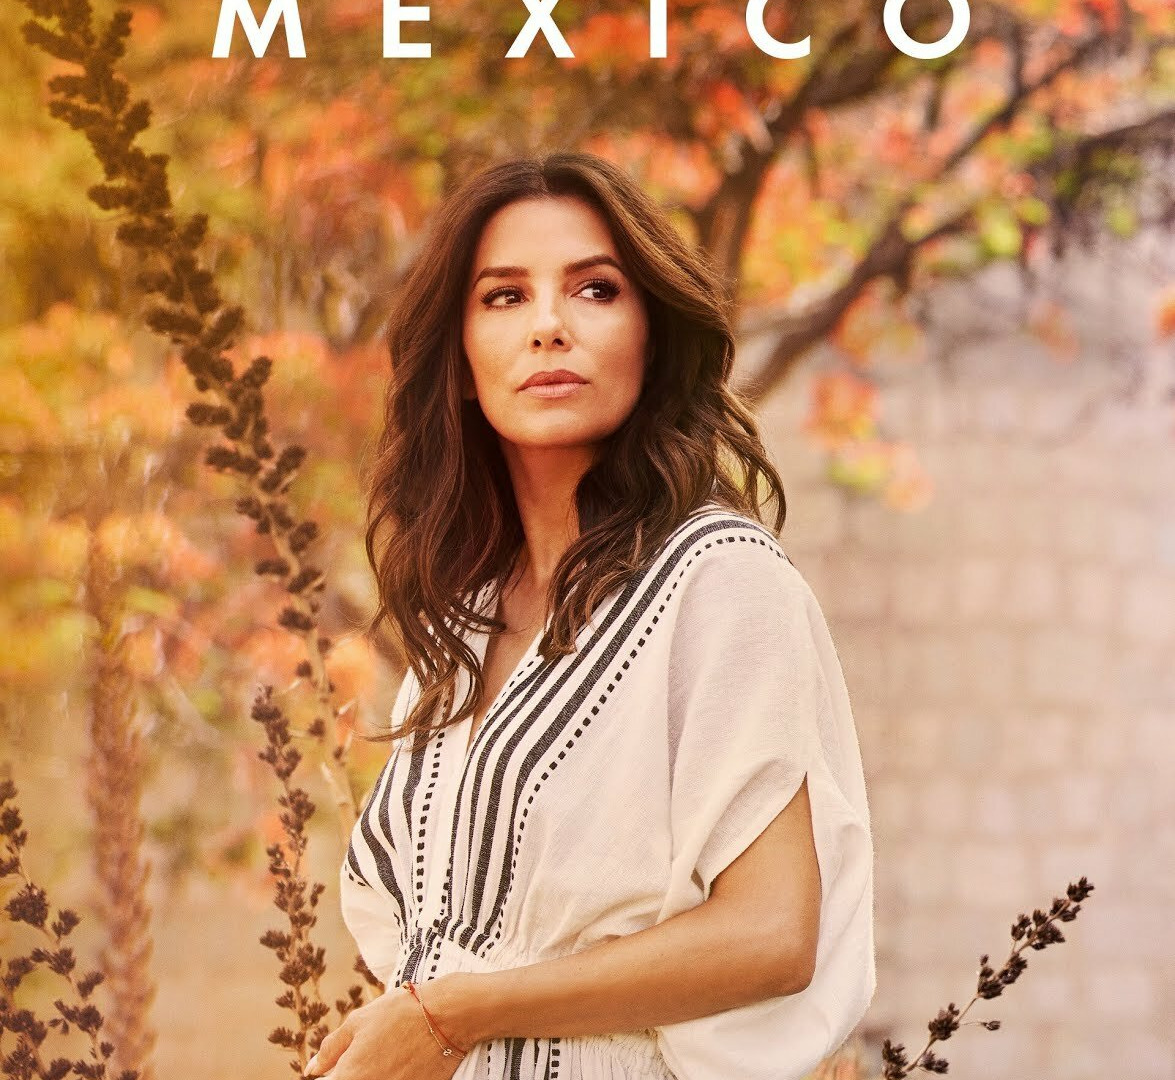 Show Eva Longoria: Searching for Mexico